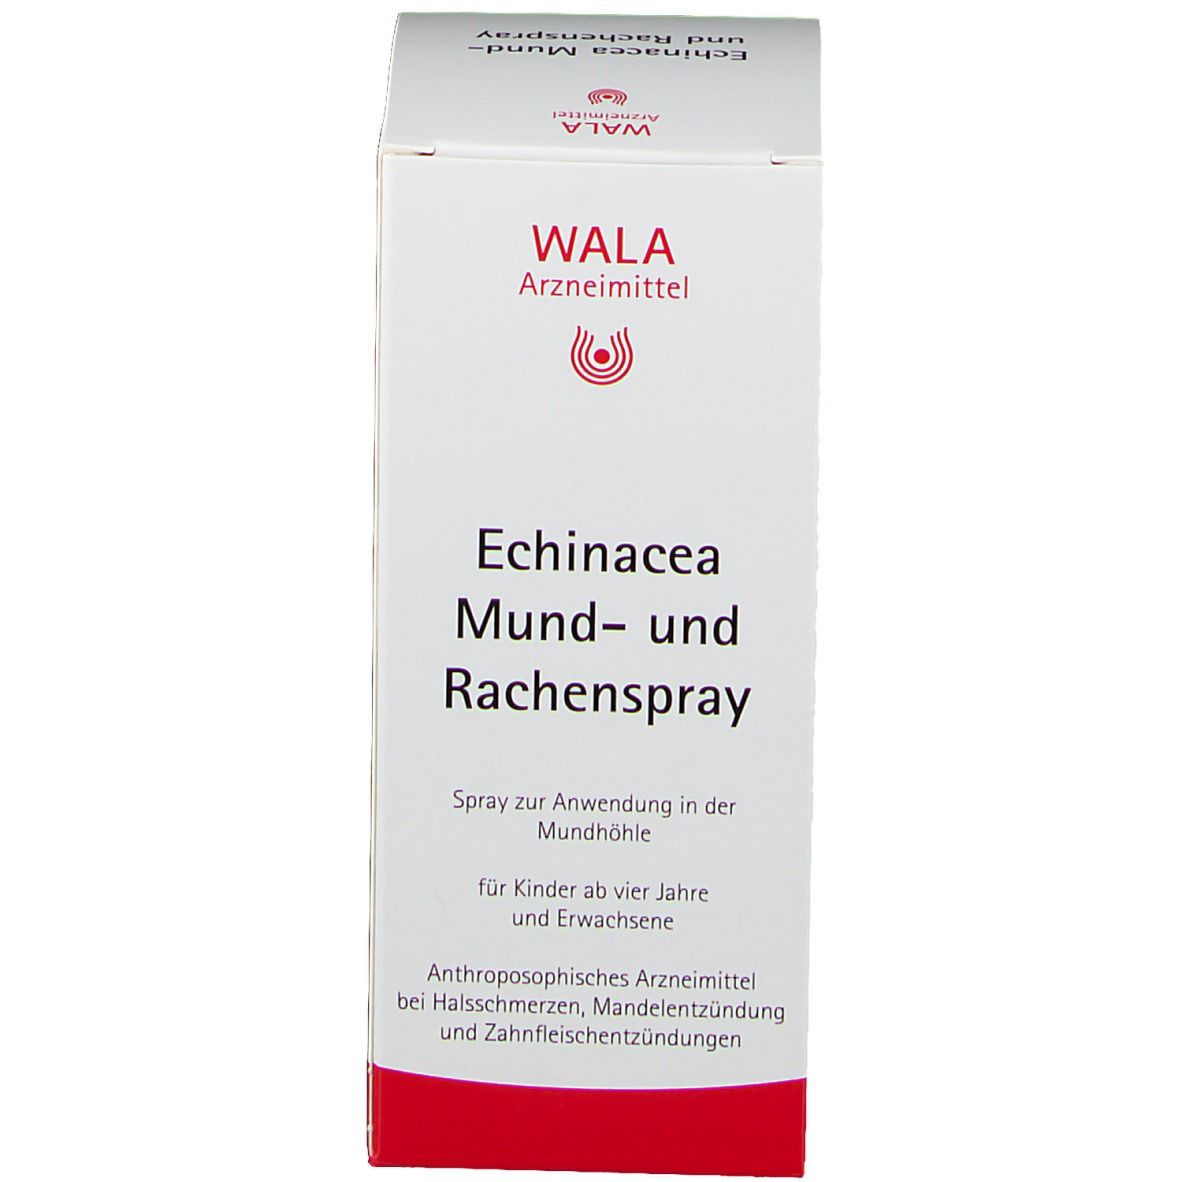 WALA® Echinacea Mund- und Rachenspray